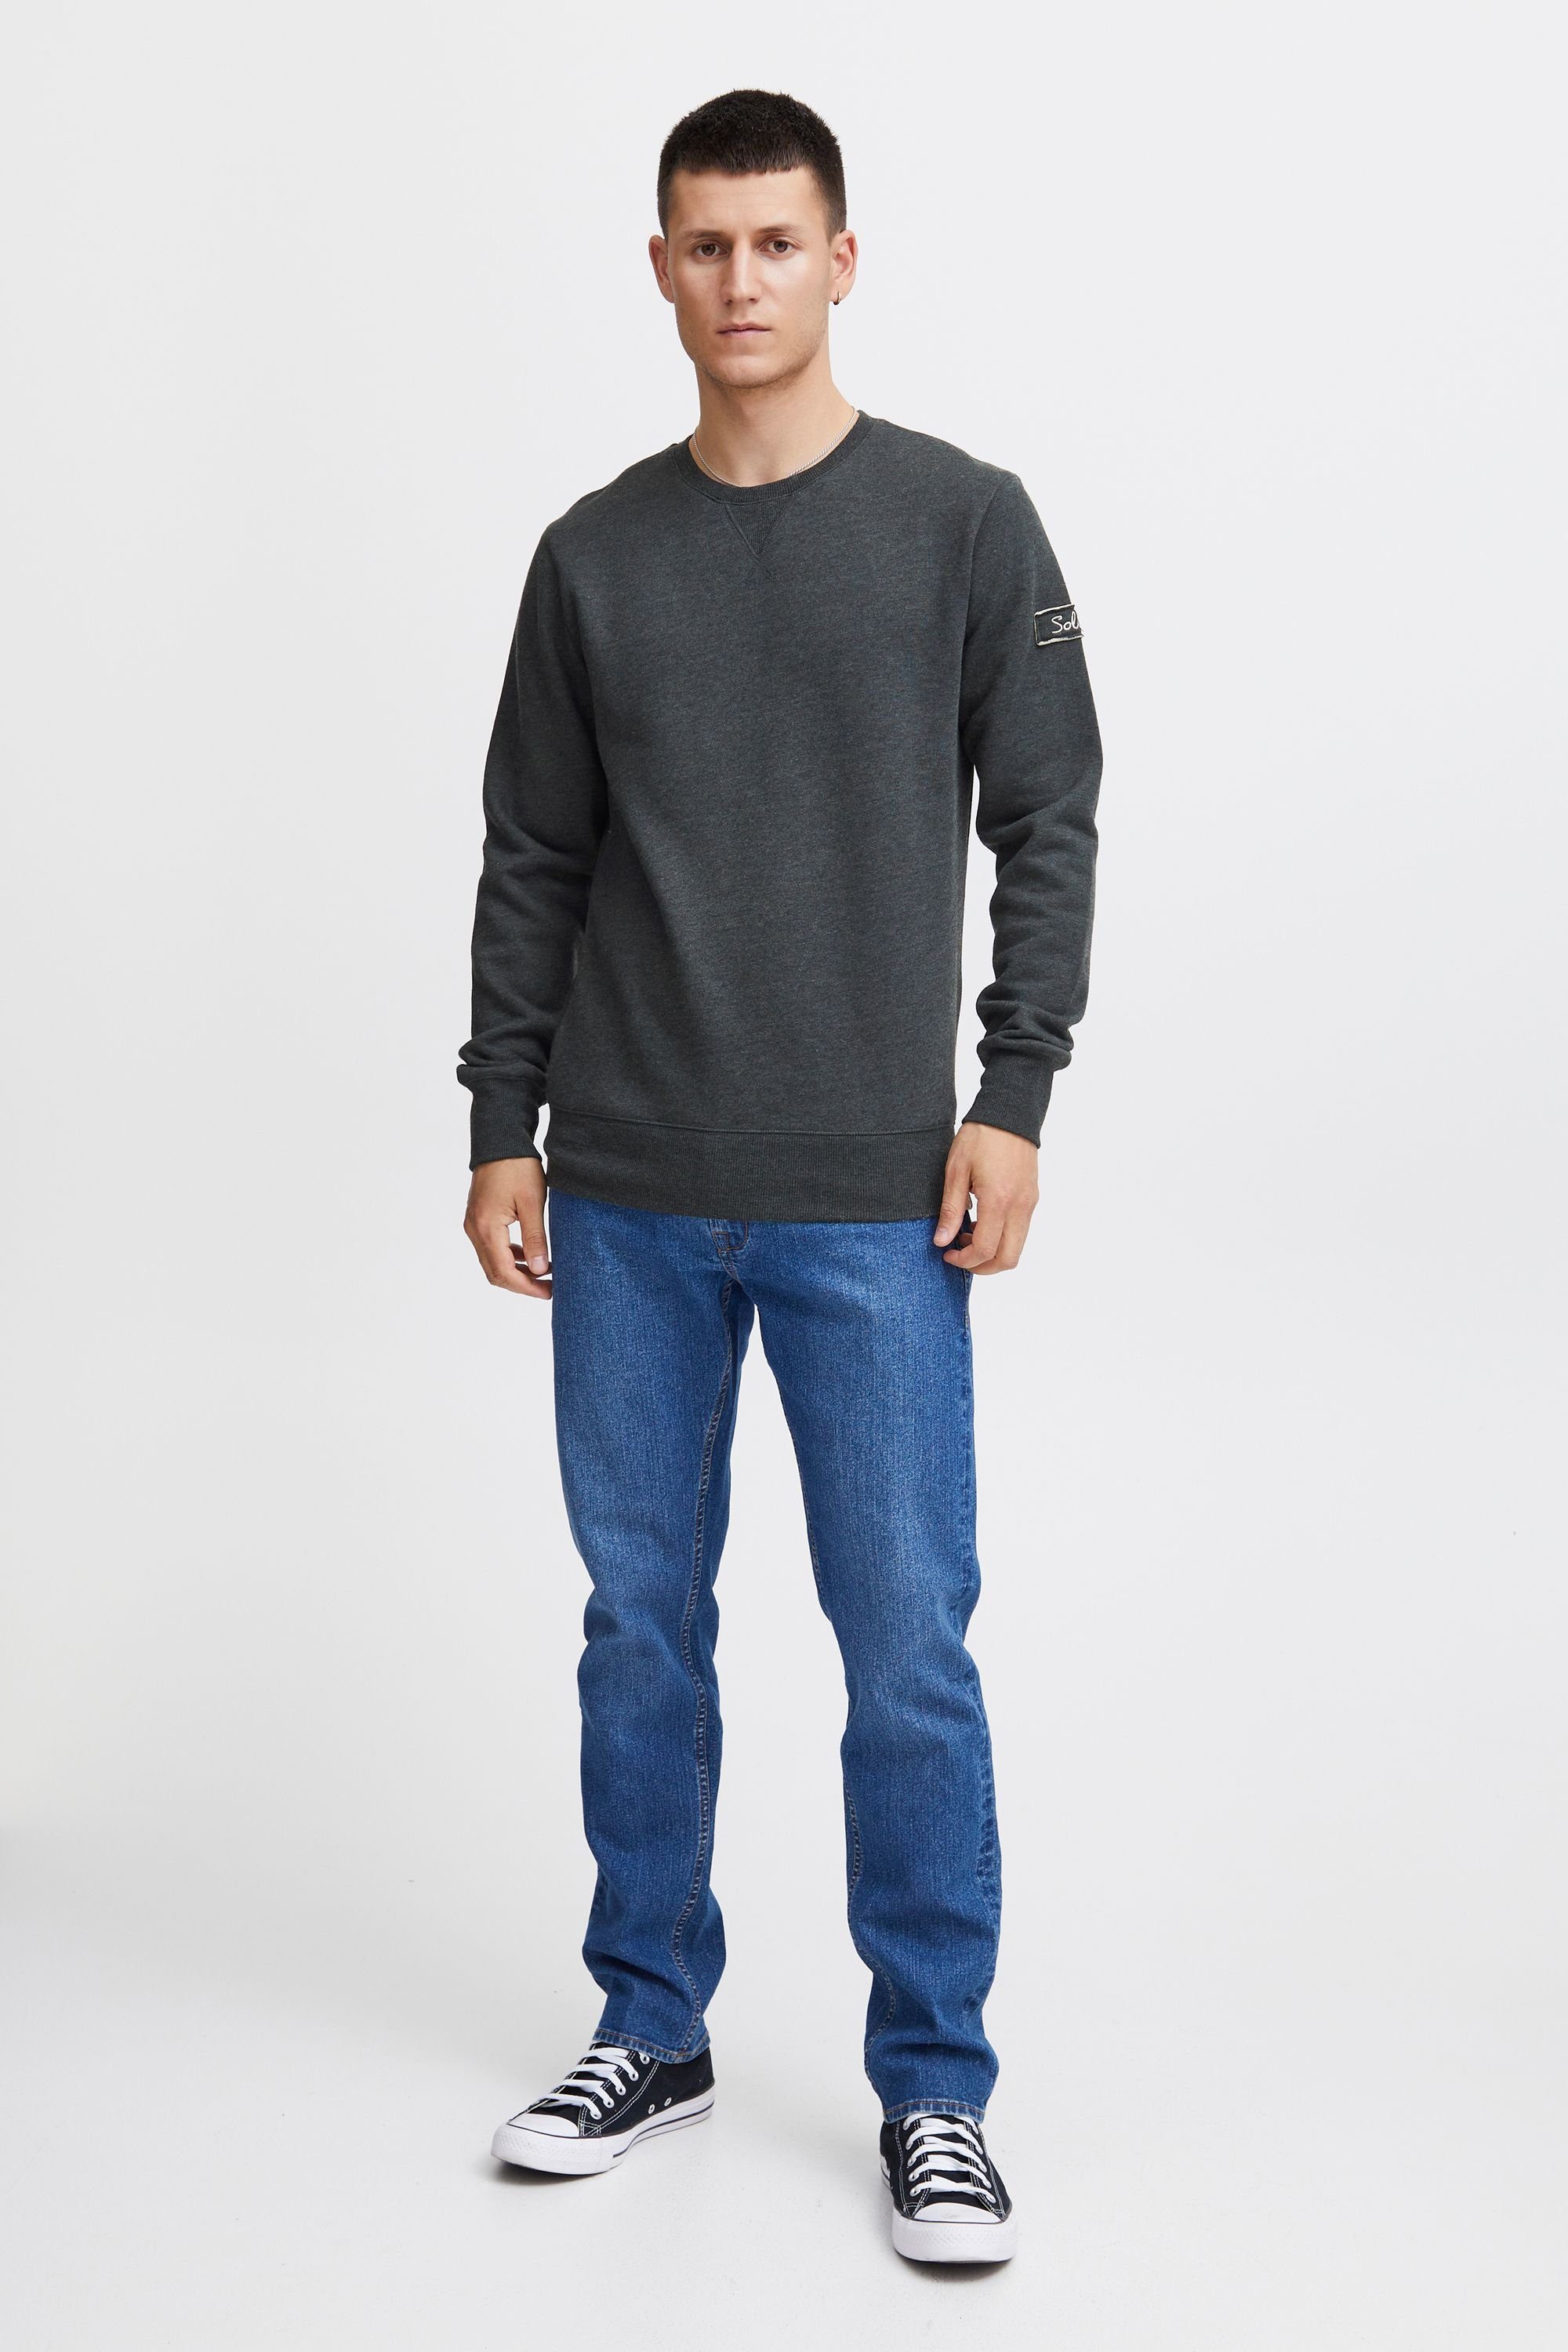 Dark Grey Sweatpullover SDTrip !Solid Fleece-Innenseite Sweatshirt (8288) Melange mit O-Neck